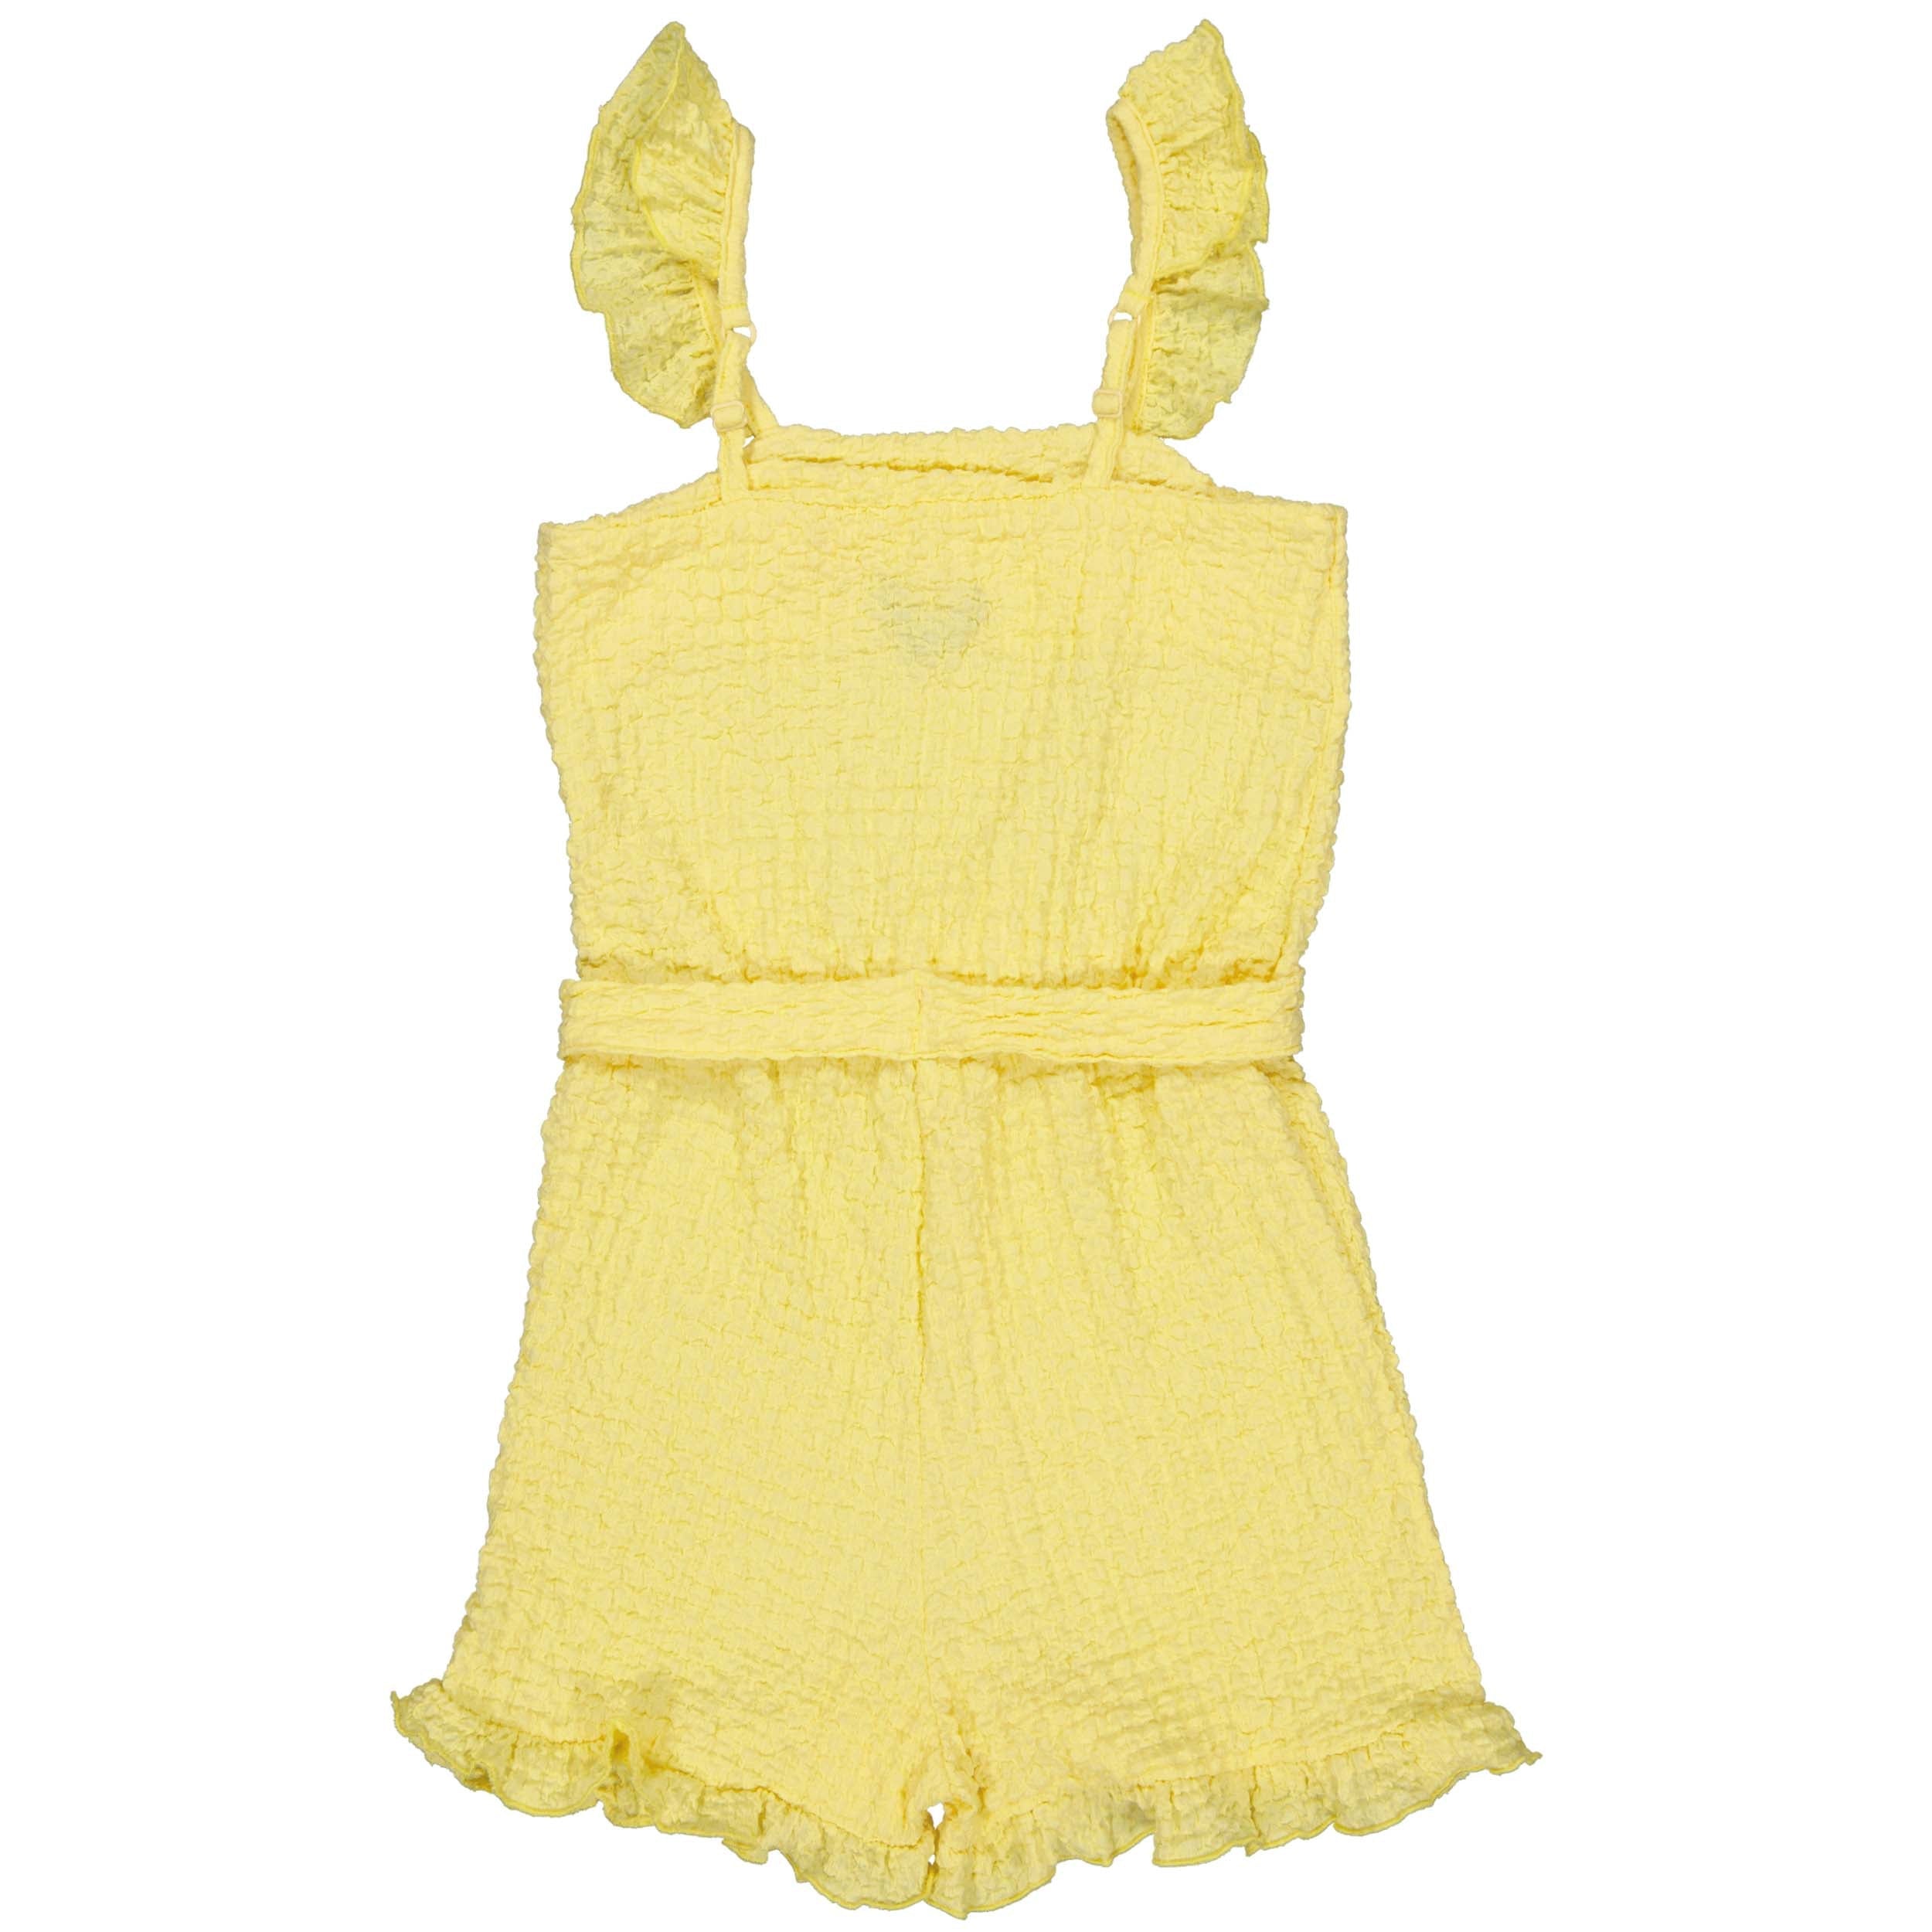 Meisjes Playsuit BETTYQS243 van Quapi in de kleur Soft Yellow in maat 122-128.